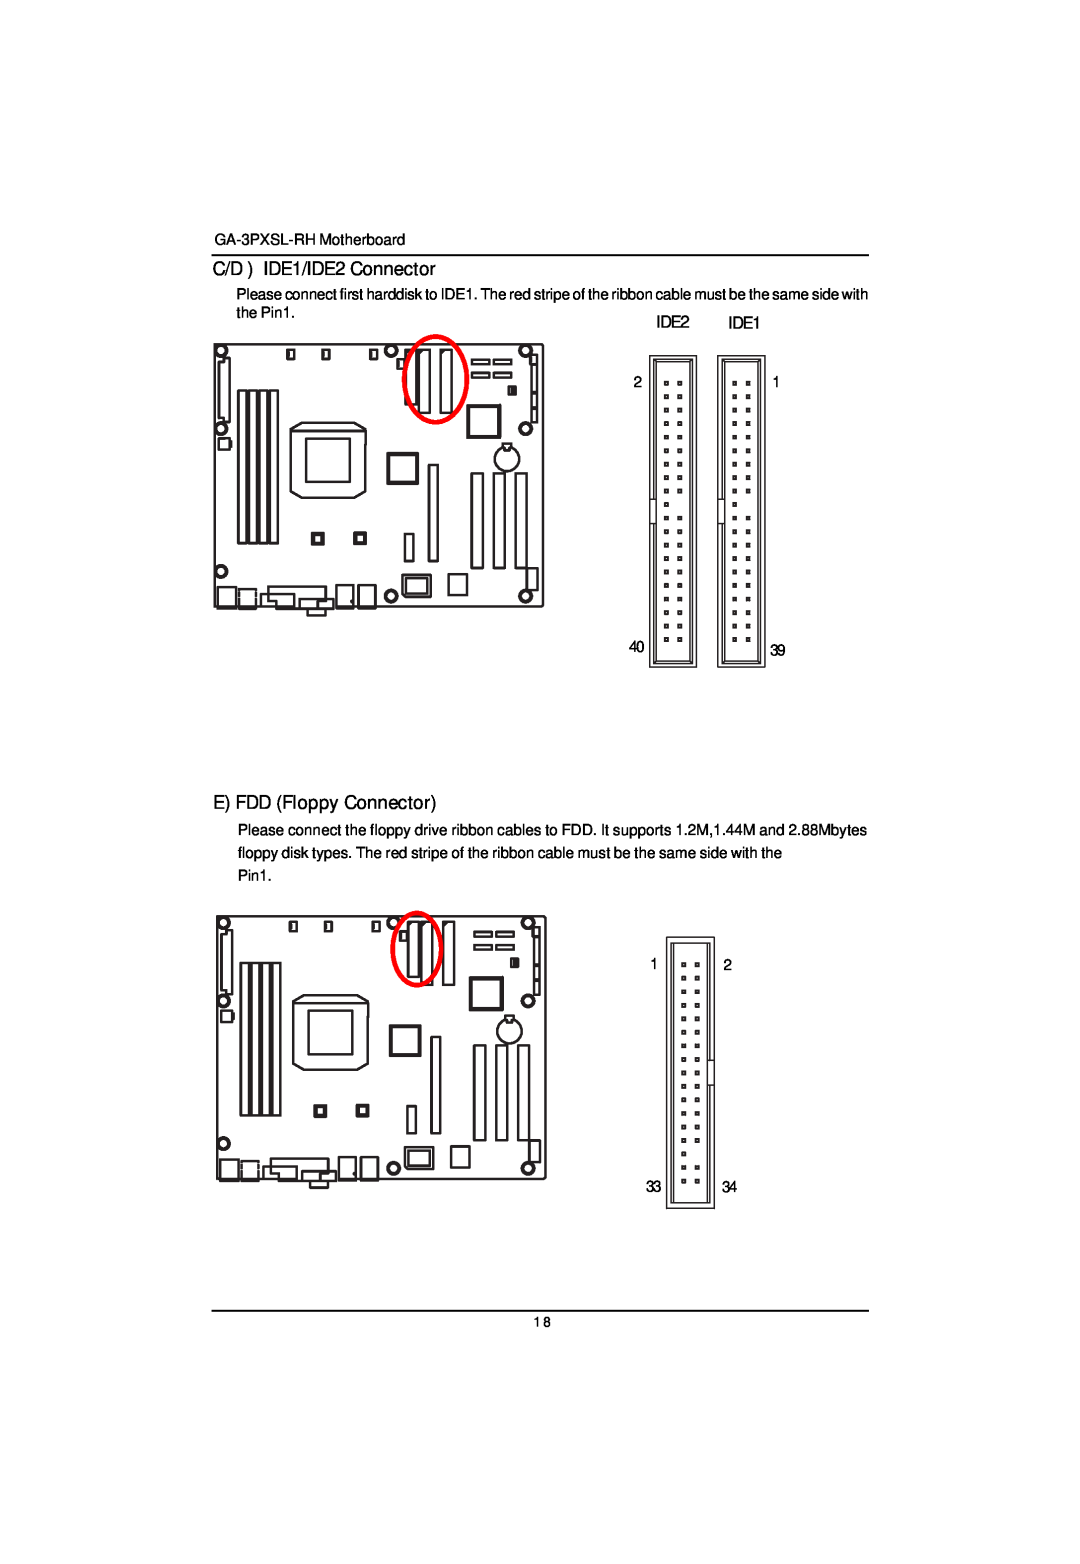 Gigabyte GA-3PXSL-RH user manual C/D IDE1/IDE2 Connector, E FDD Floppy Connector 